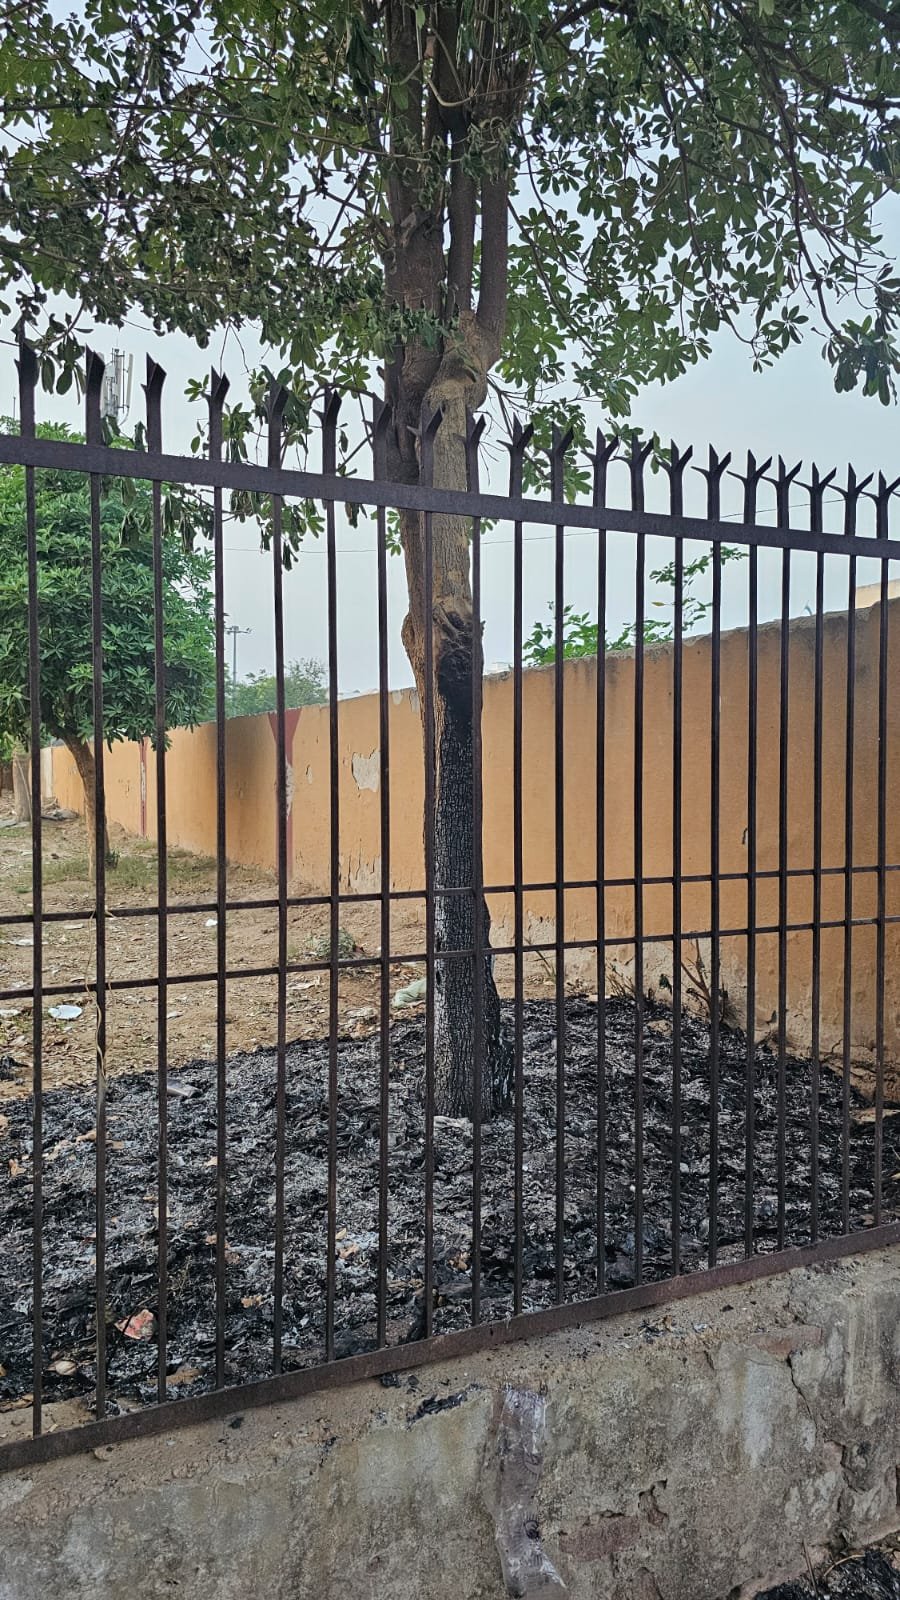 धारूहेडा: सेक्टर छह सामूदायिक केंद्र में कूडे में लगाई आग से जला पेड